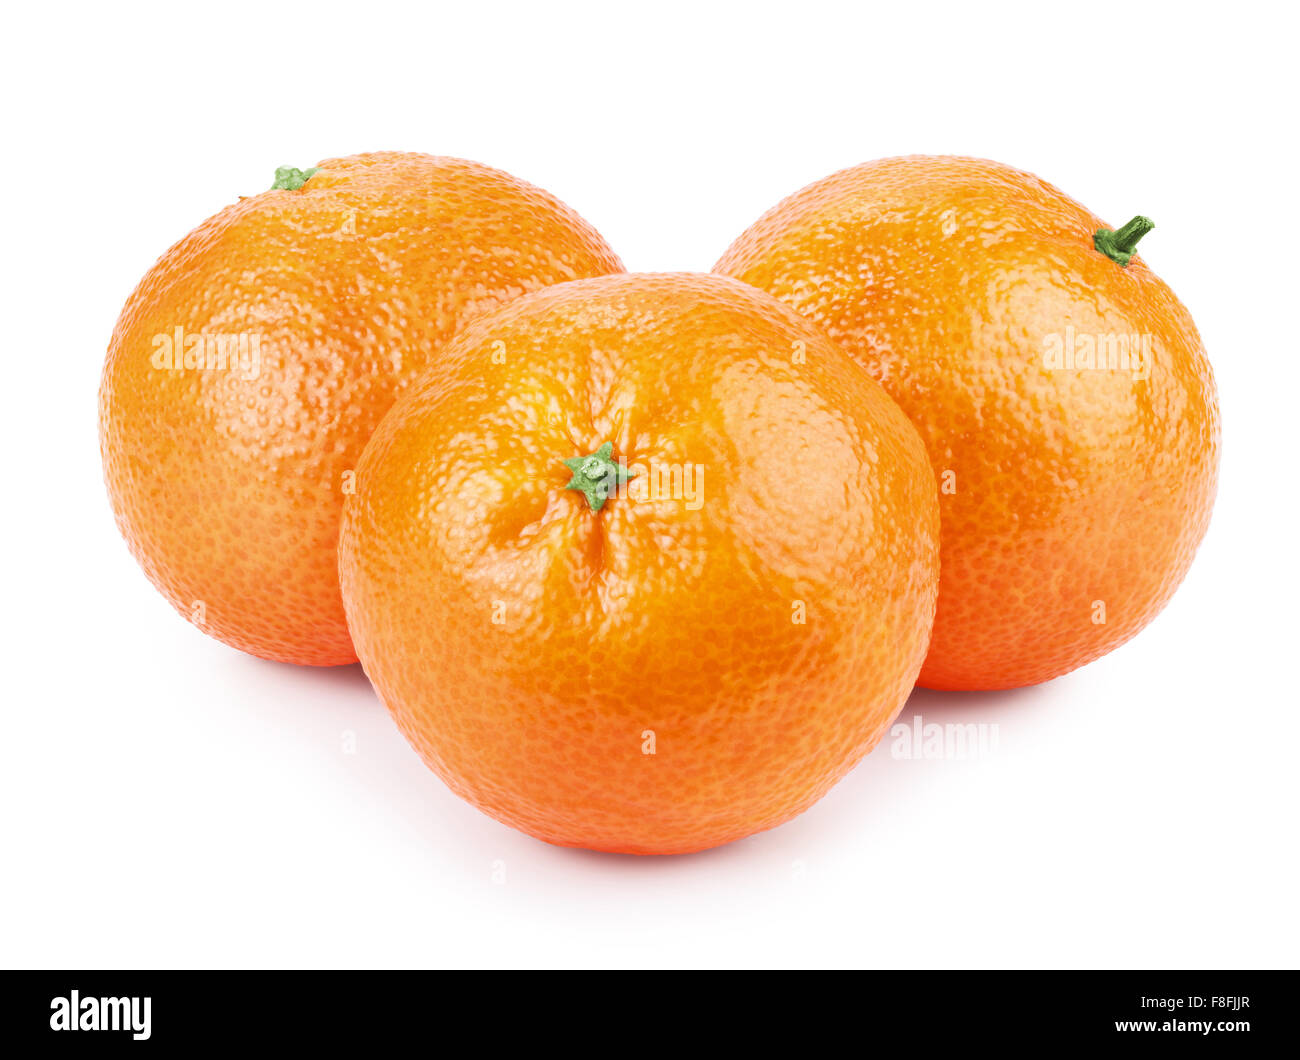 tangerine or mandarin fruit isolated on white background cutout Stock Photo